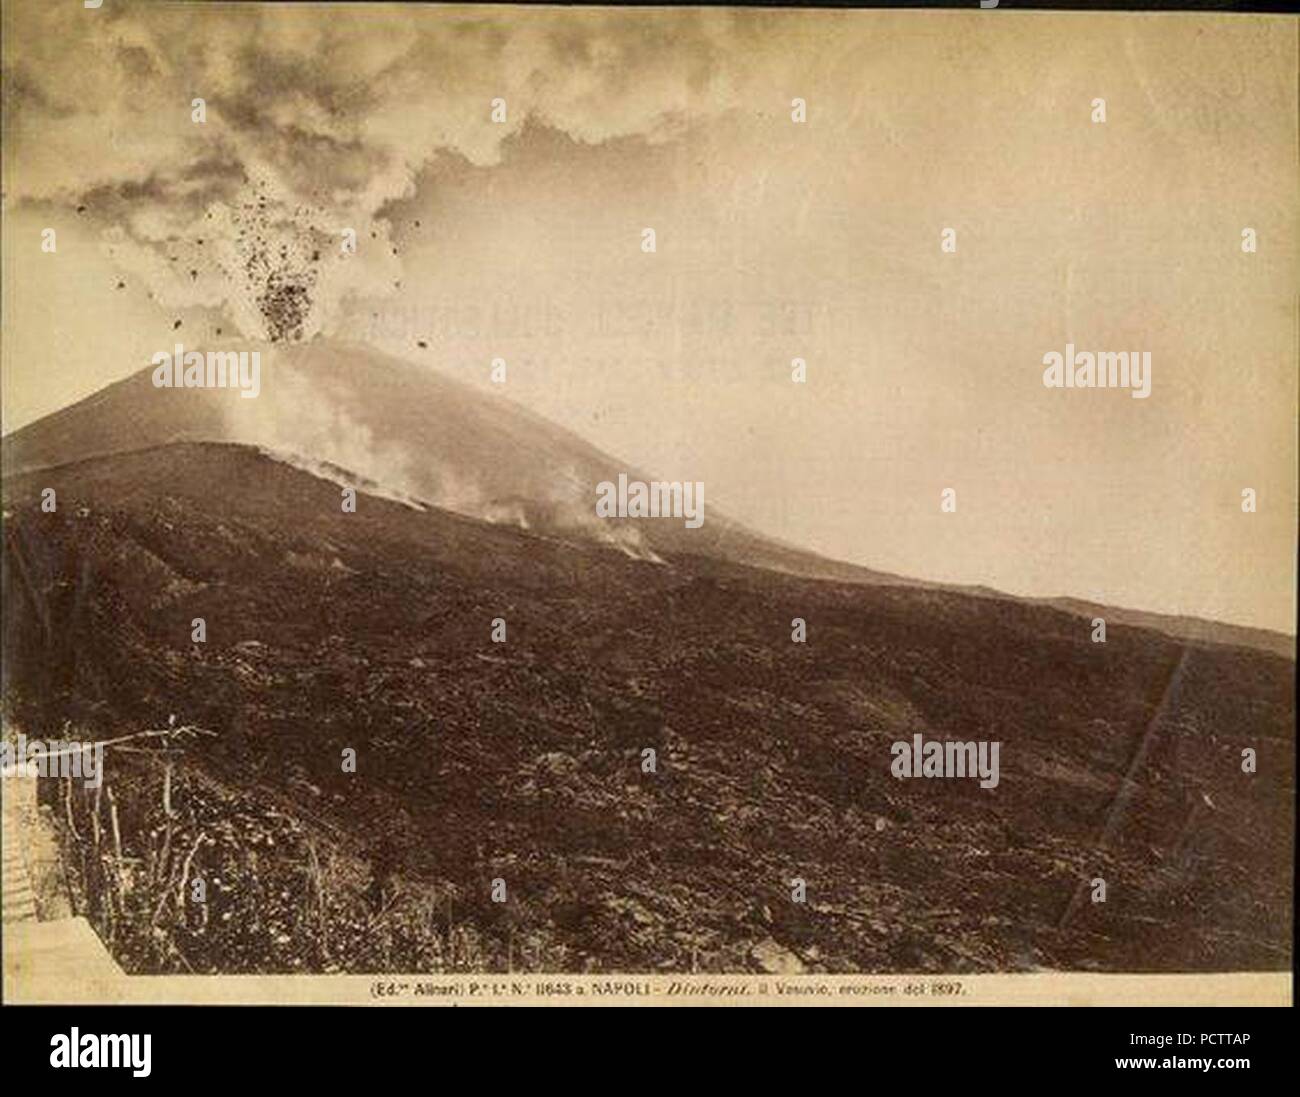 Alinari 11643 - Vesuvio eruzione 1897. Stock Photo